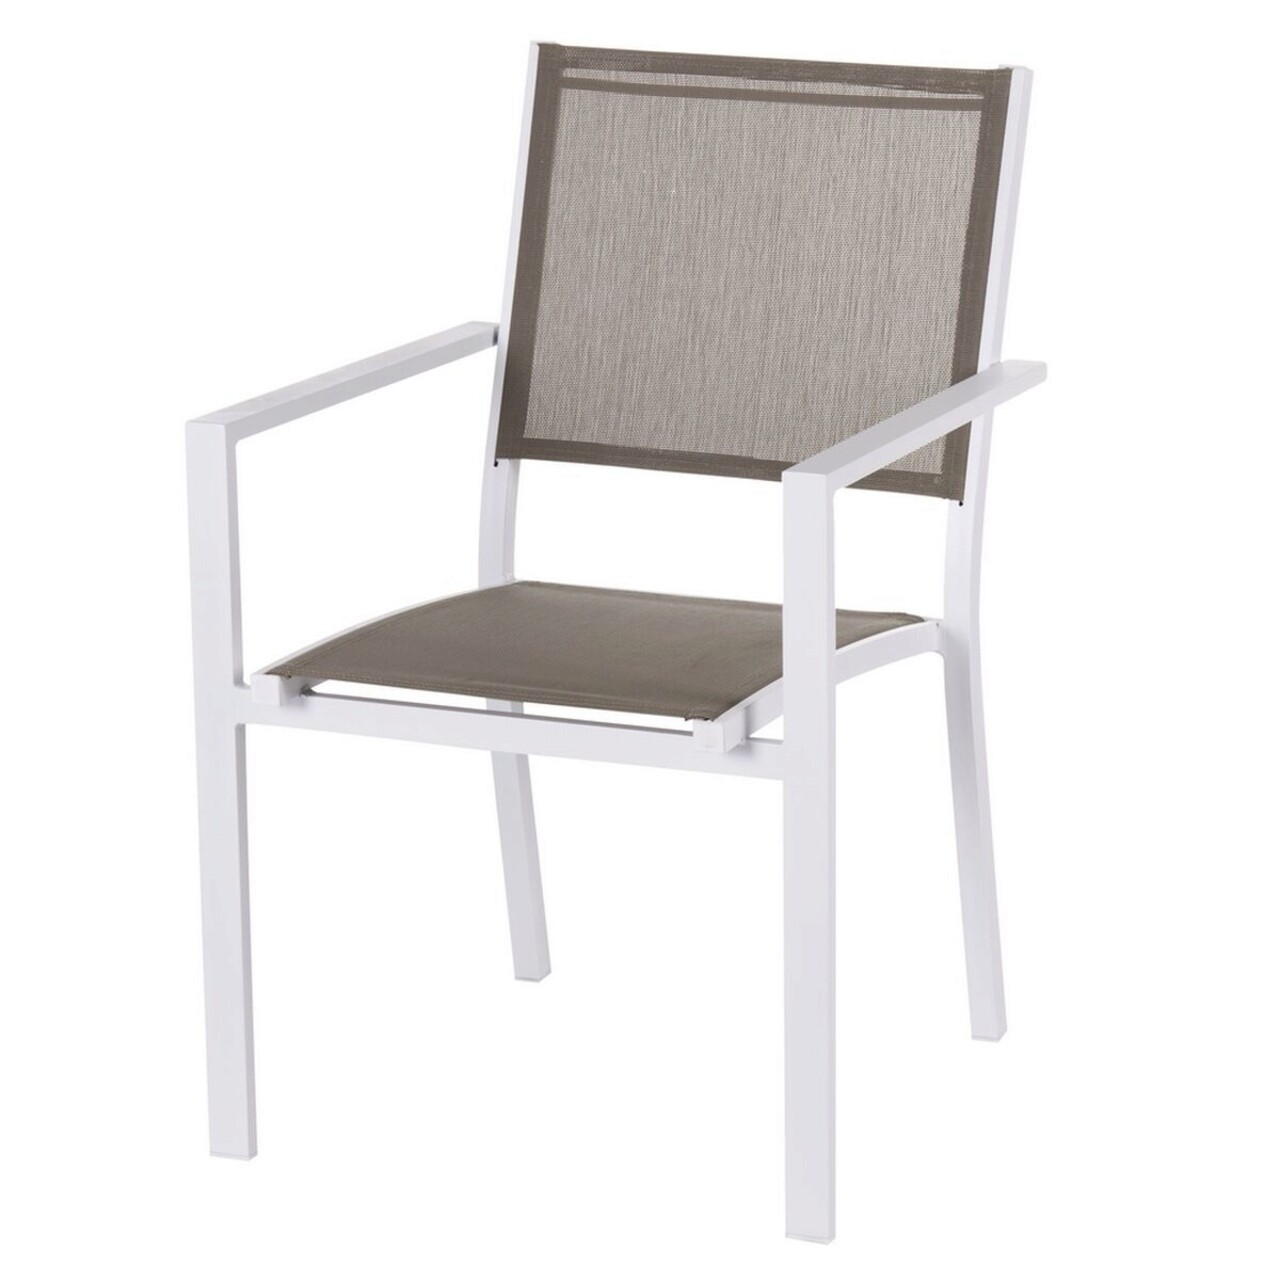 Thais Kerti szék, 55.2 x 60.4 x 86 cm, alumínium, grézs/fehér